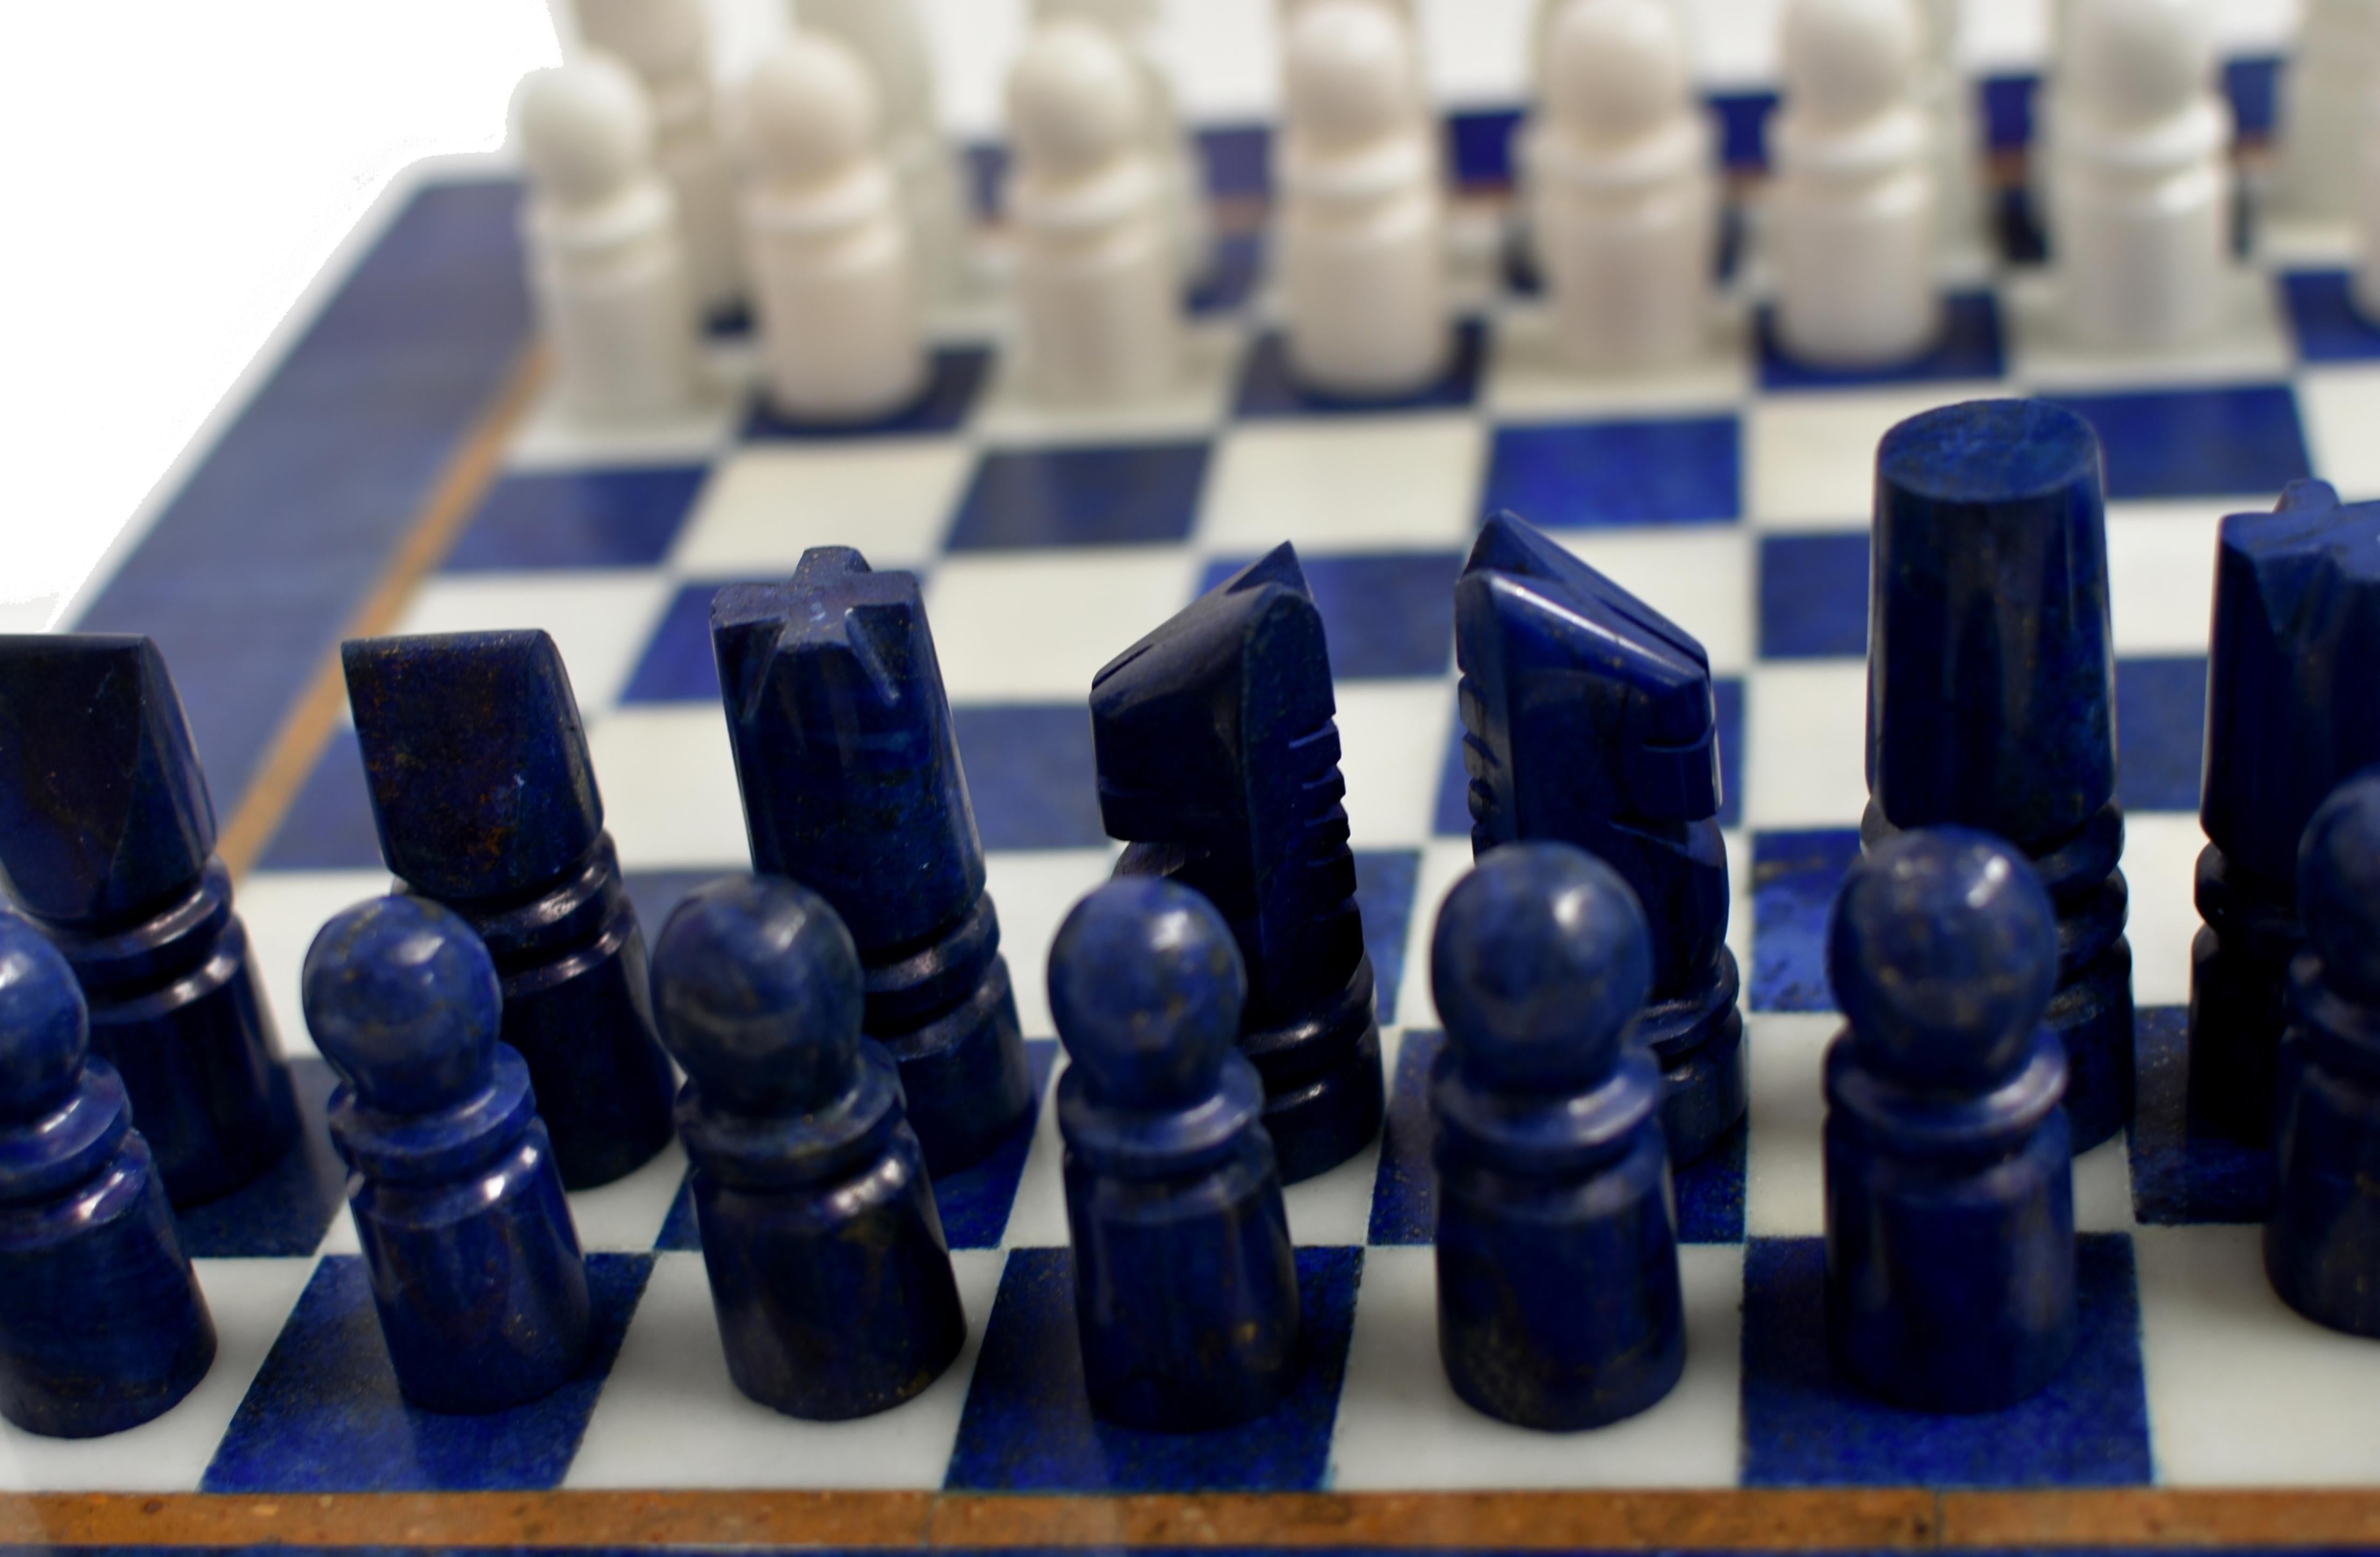 Large Chess Set Gemstone Lapis and Marble 15.5